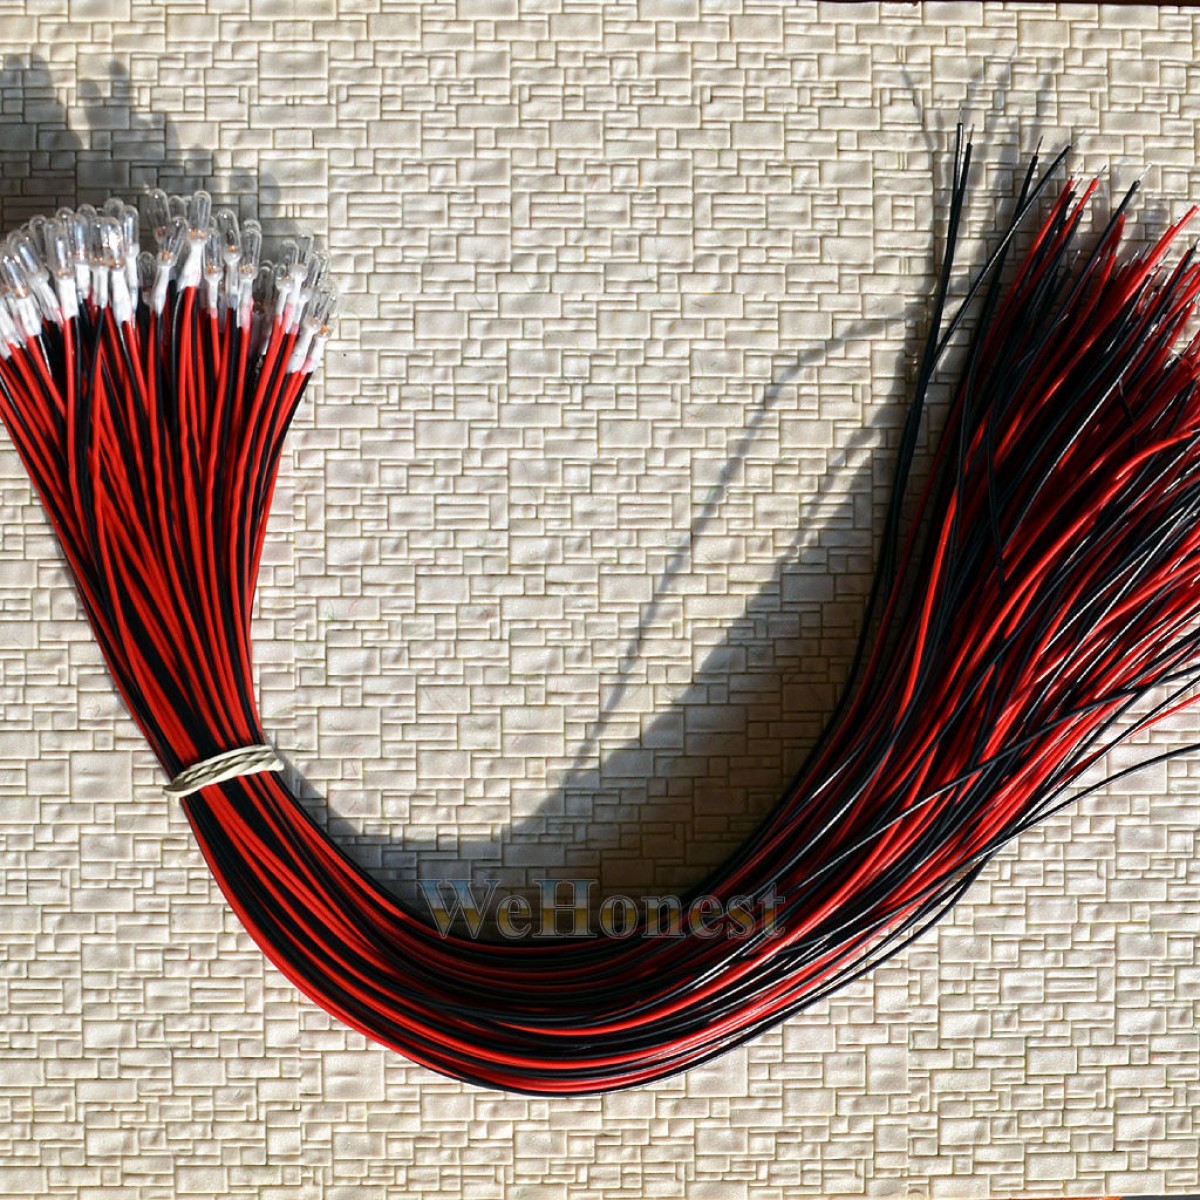 10 x Clear Pre-Wired 30cm wires Grain of Wheat Bulbs 3mm 16V 70mA Mini Bulbs       (WeHonest)